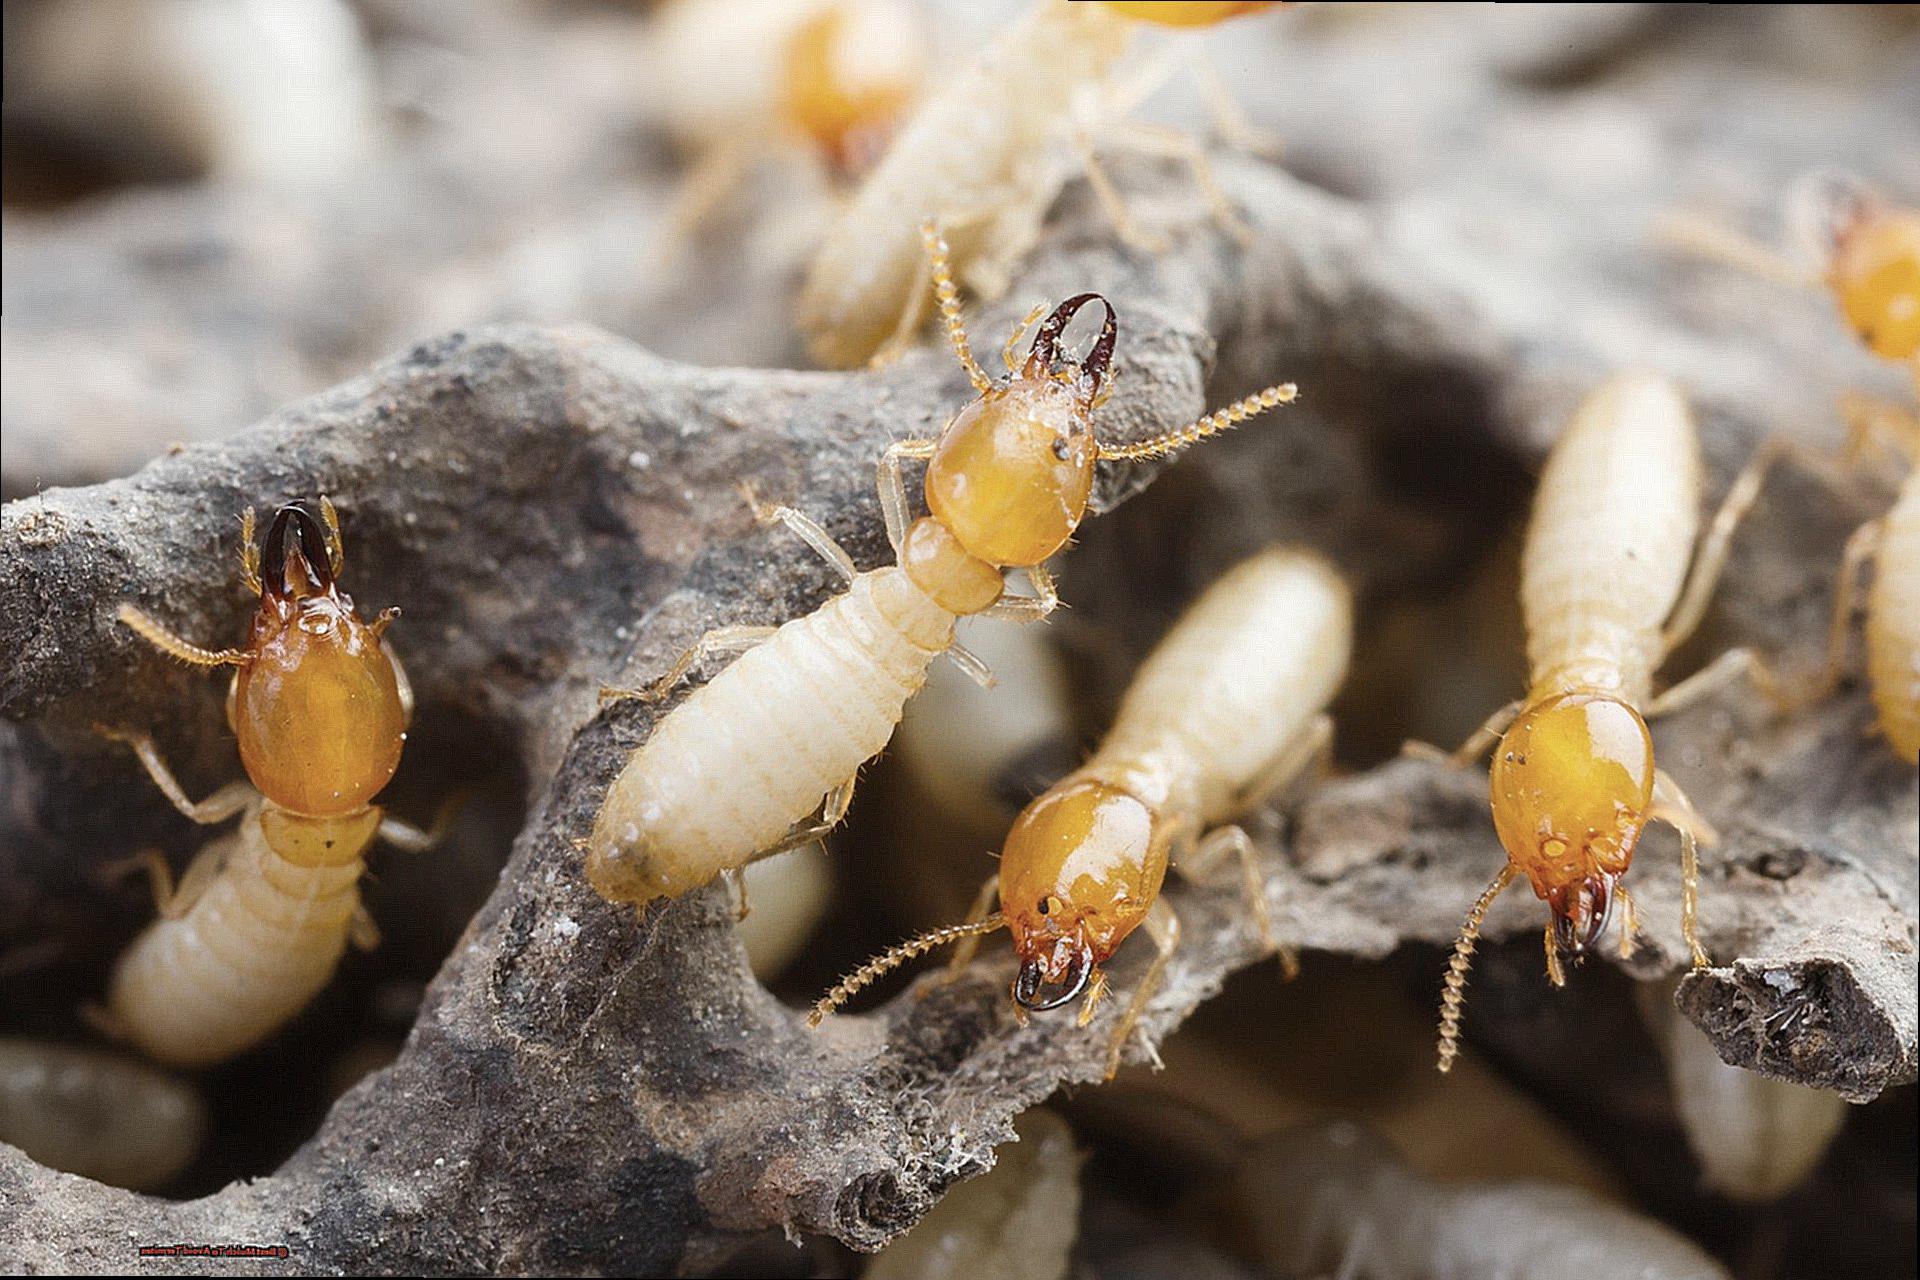 Best Mulch To Avoid Termites-2